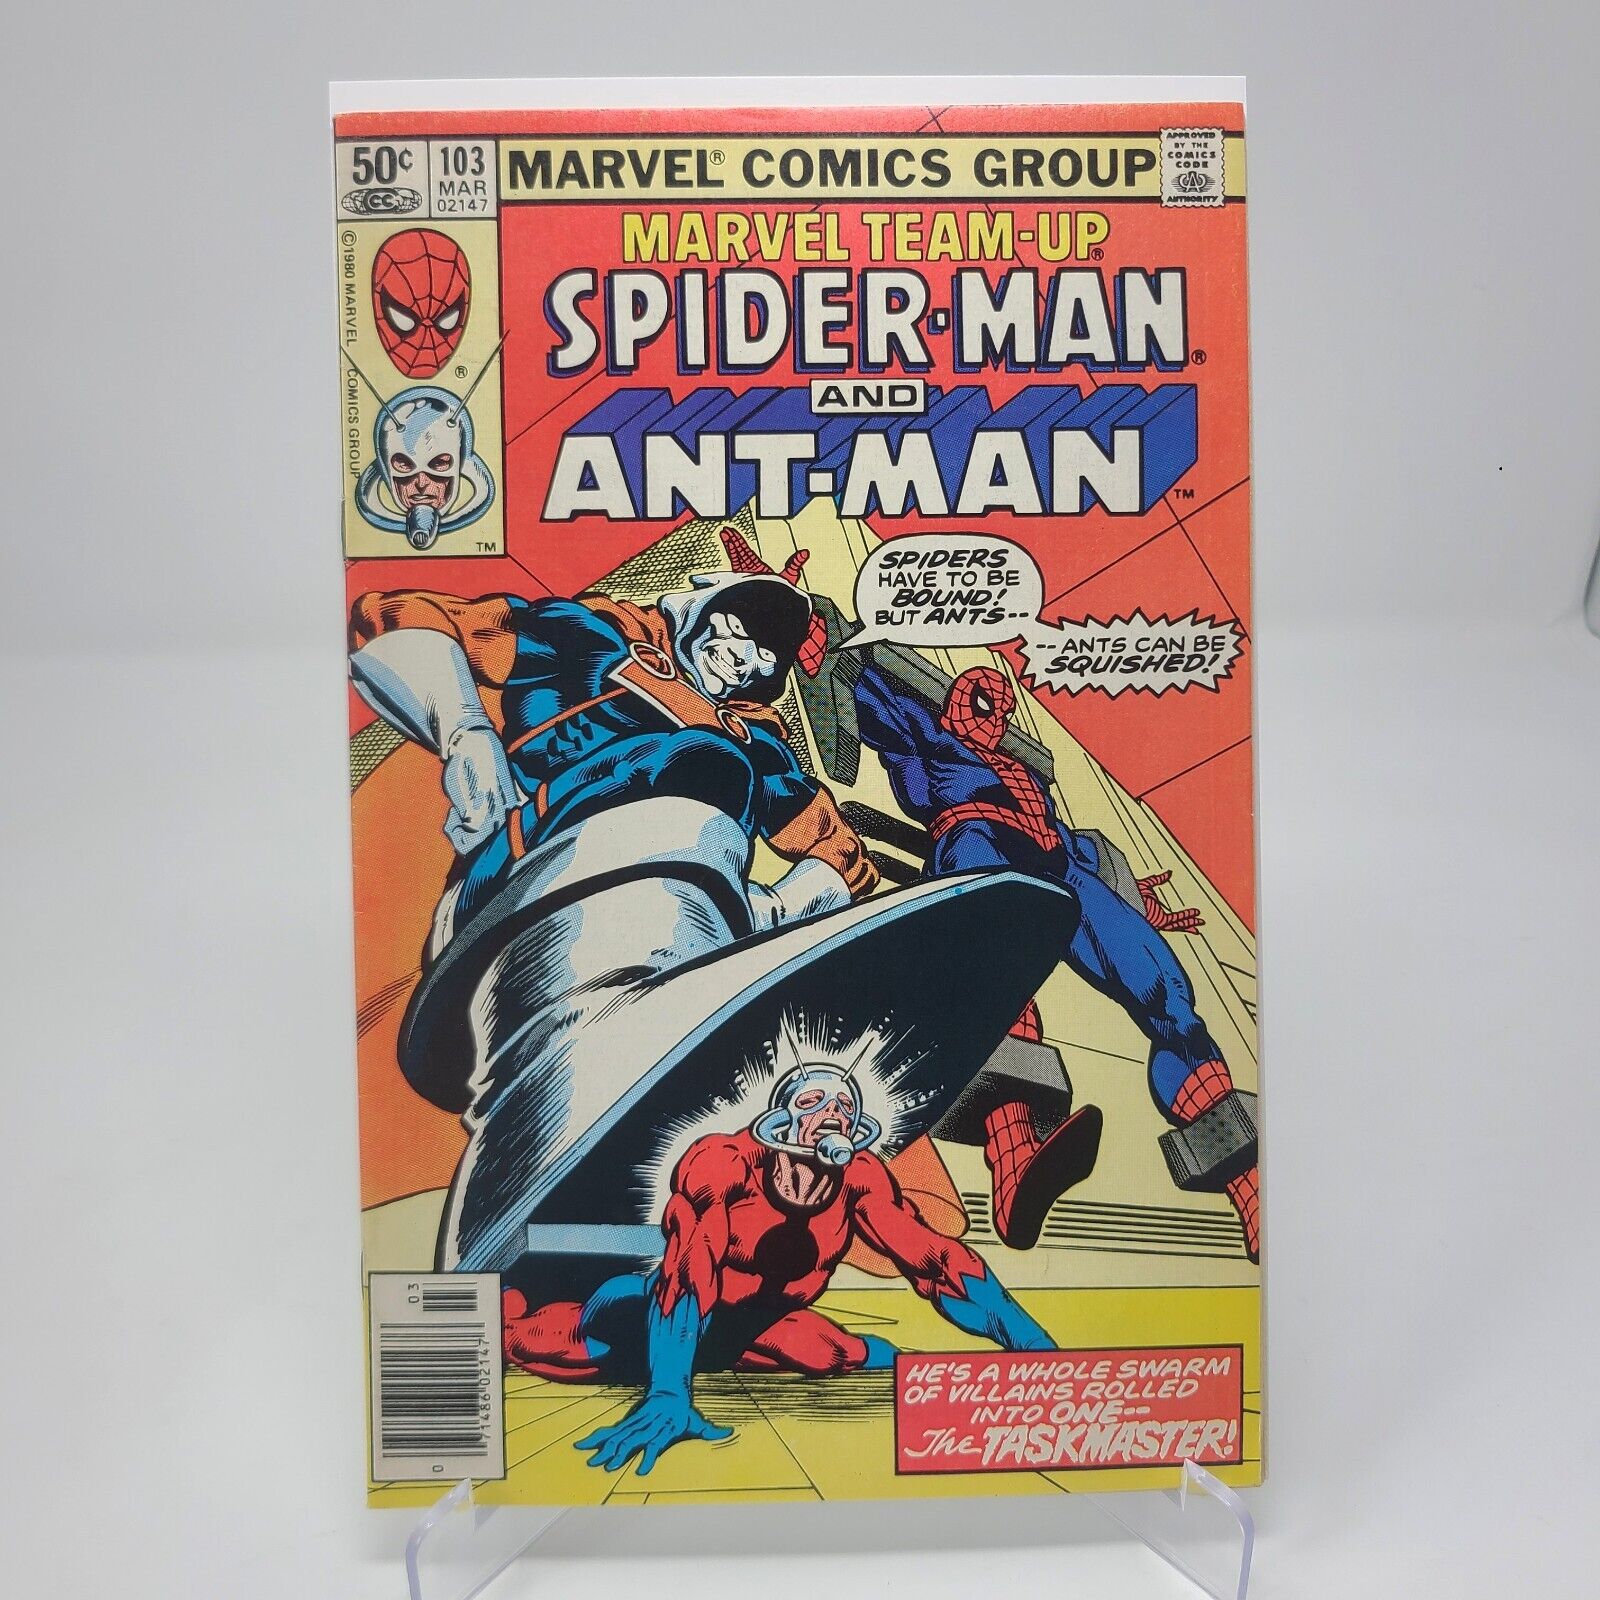 Marvel Team-Up #103 March 1981 Spider-Man Ant-Man Taskmaster (FN/VF)